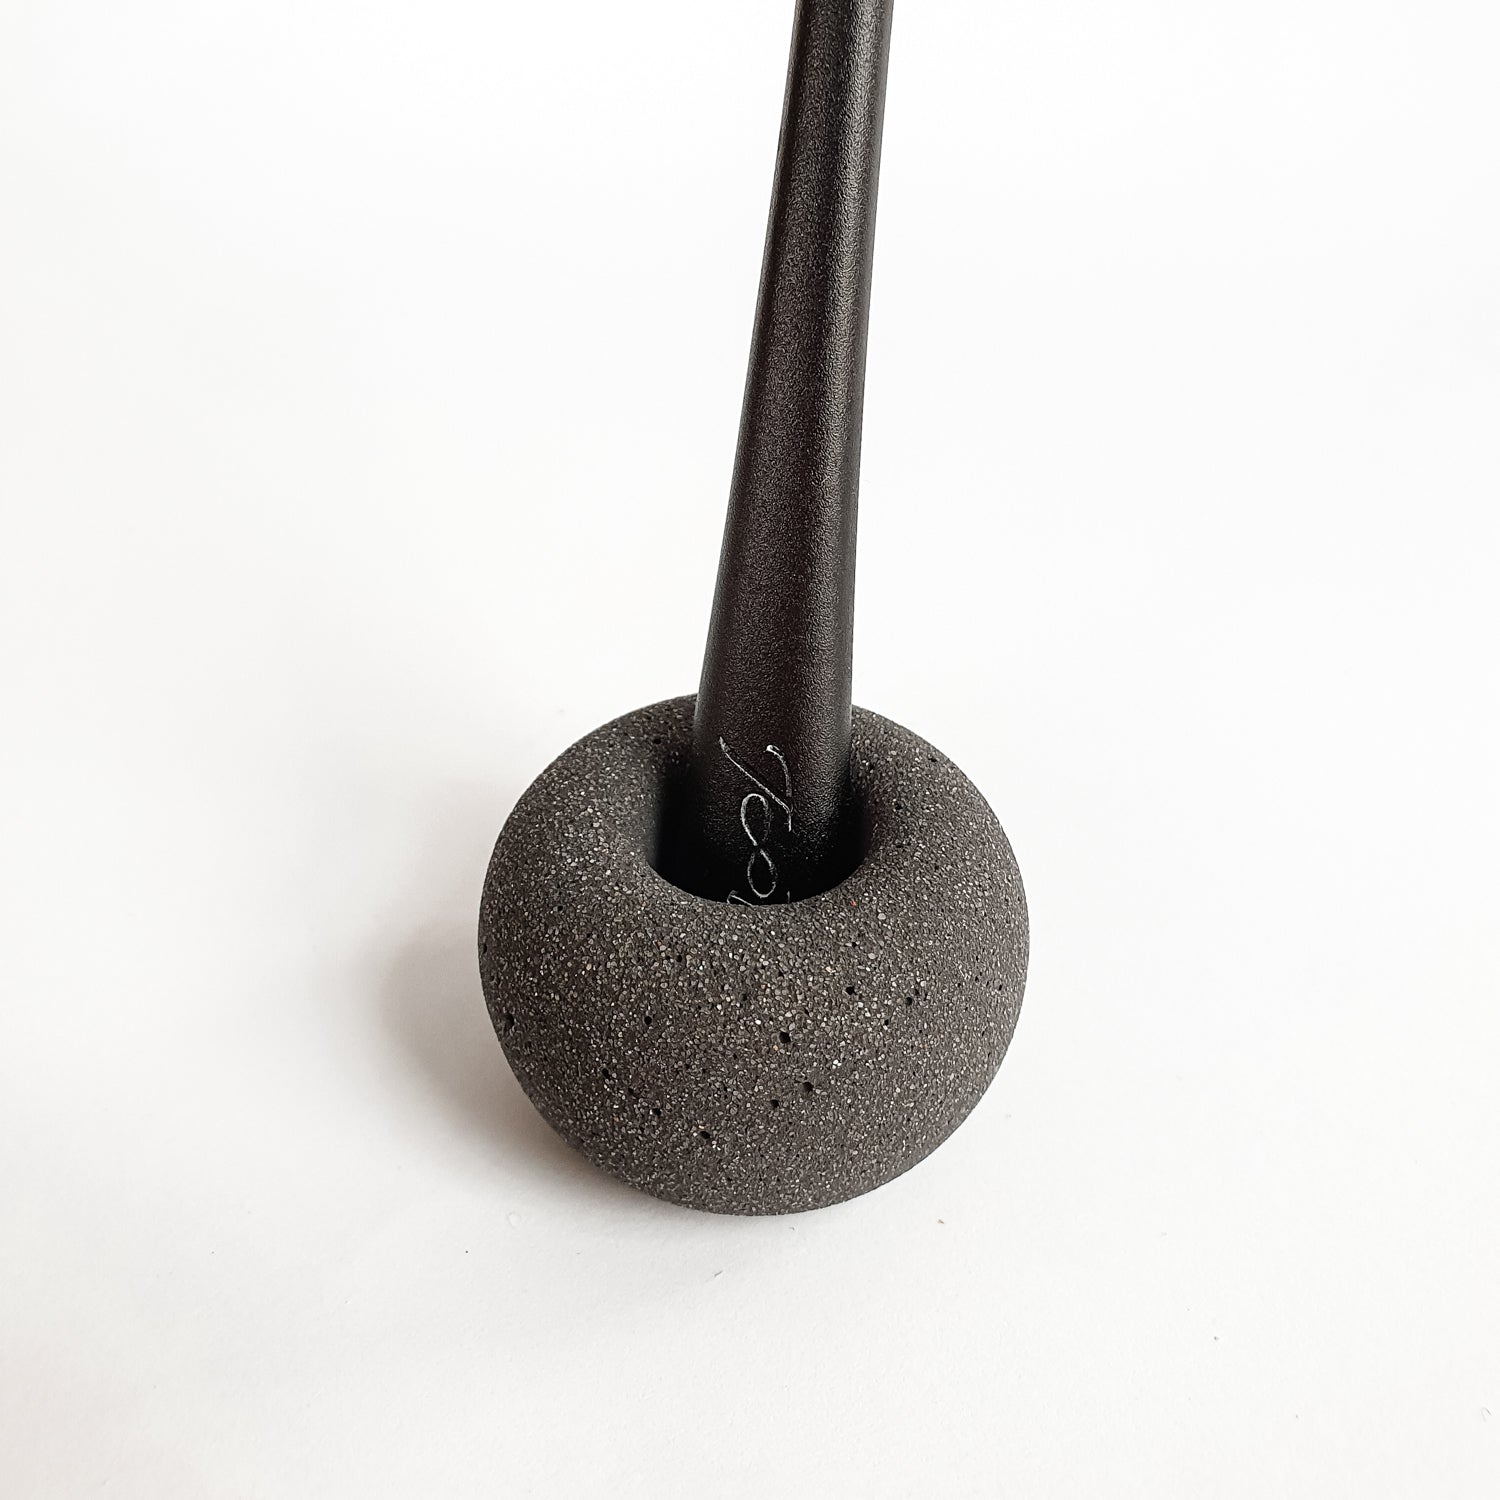 Dantų šepetėlio laikiklis | Medžio anglies juodai pilkas - 1 vnt